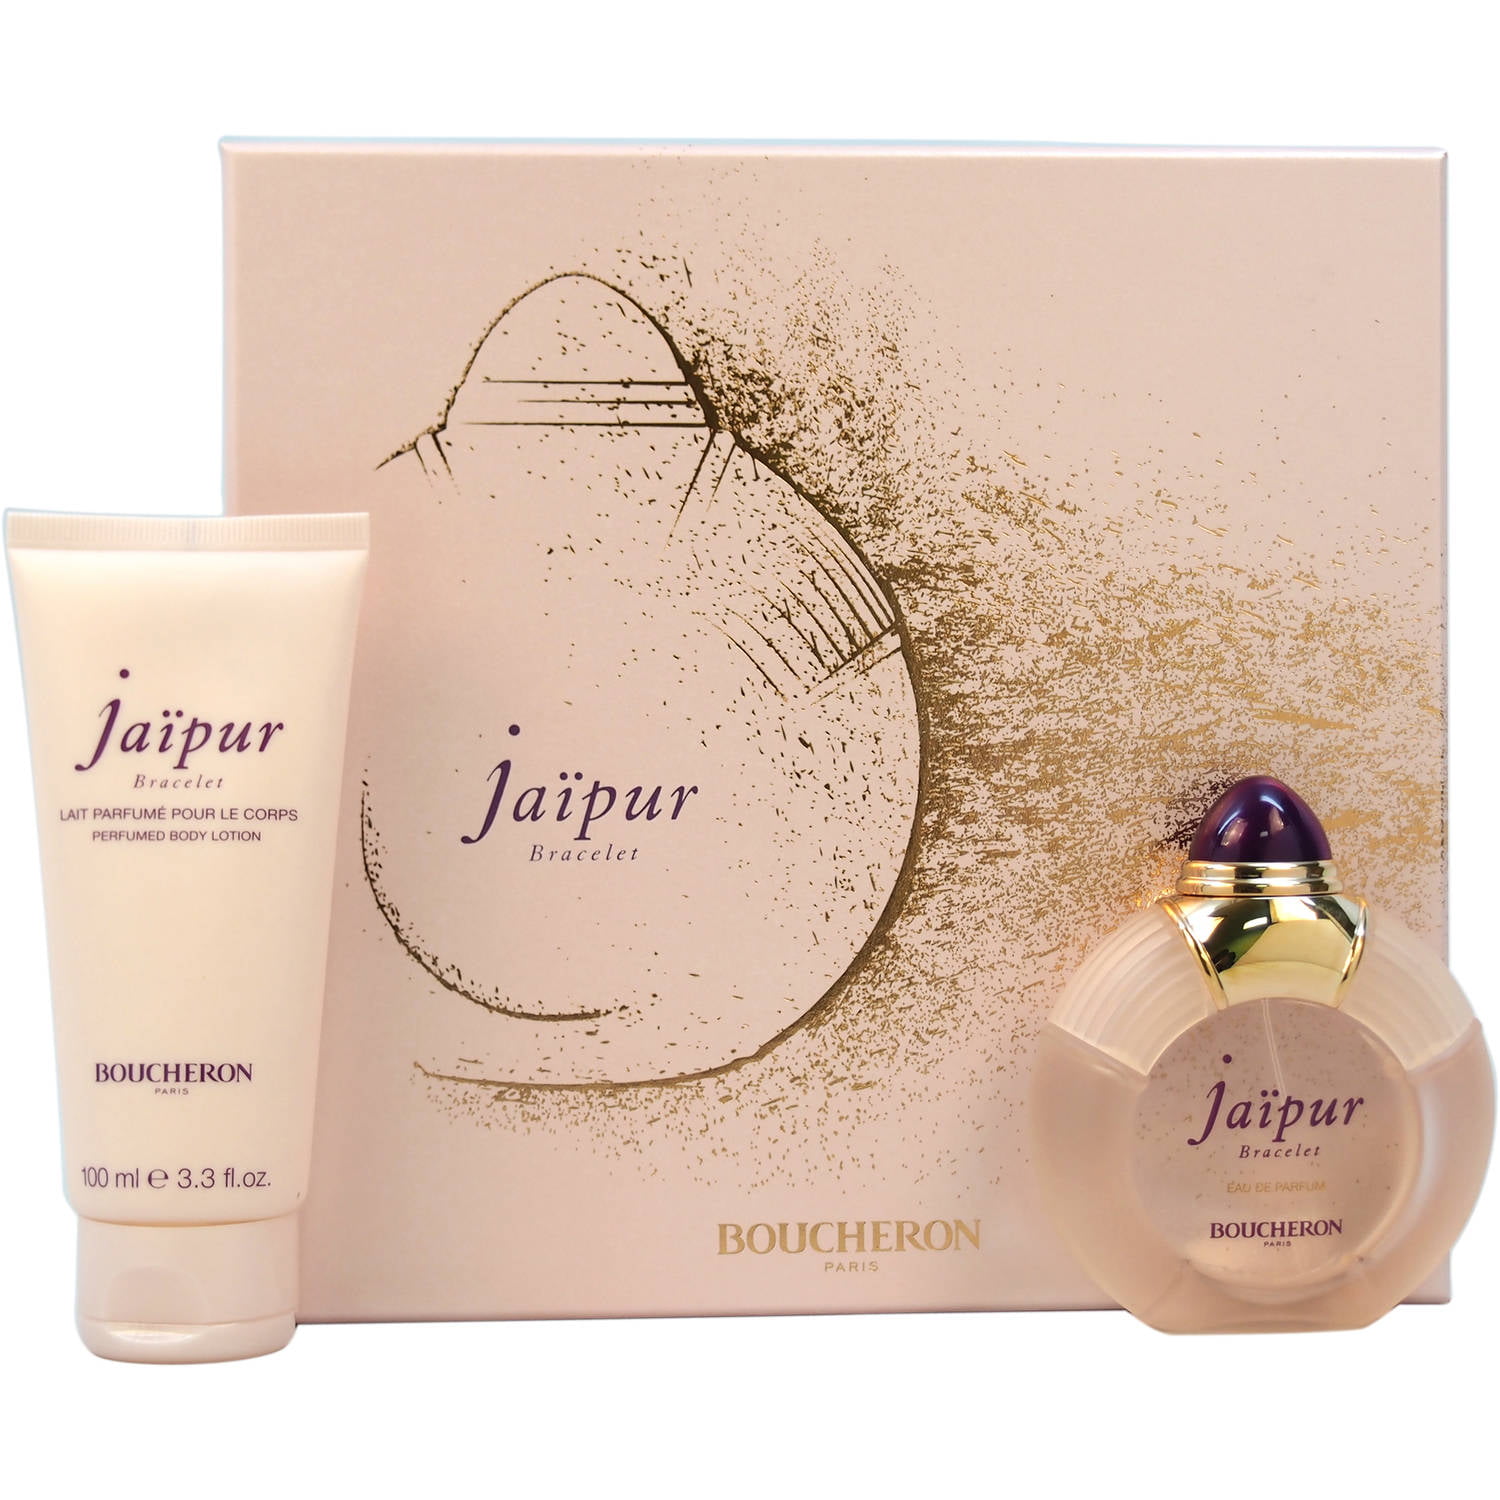 Boucheron Jaipur Bracelet Gift Set, 2 pc | Eau de Parfum